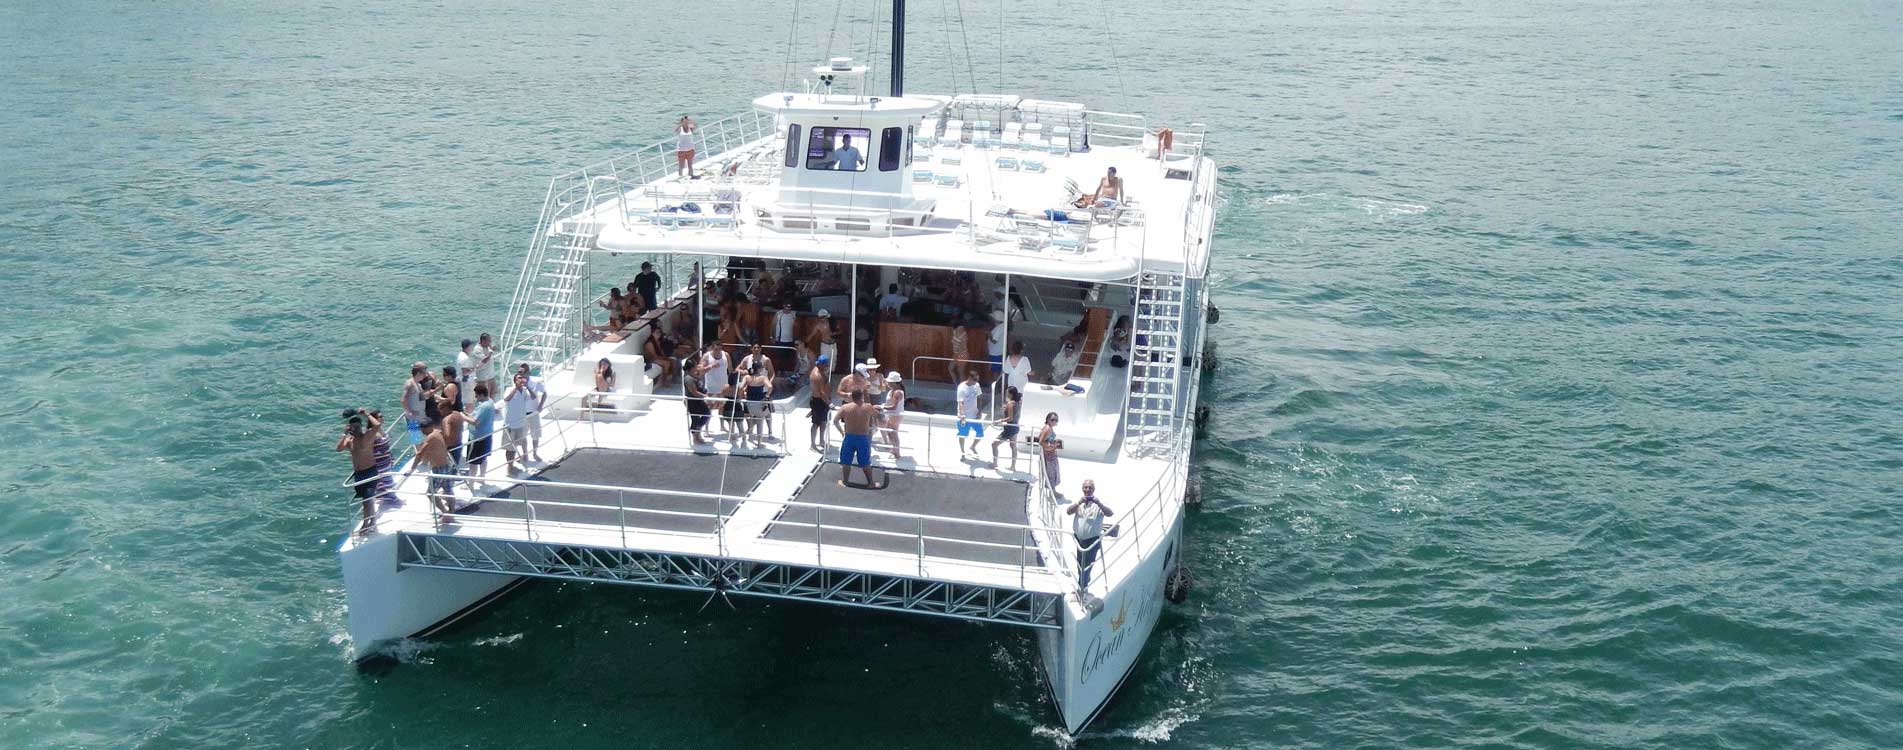 take two catamaran tours